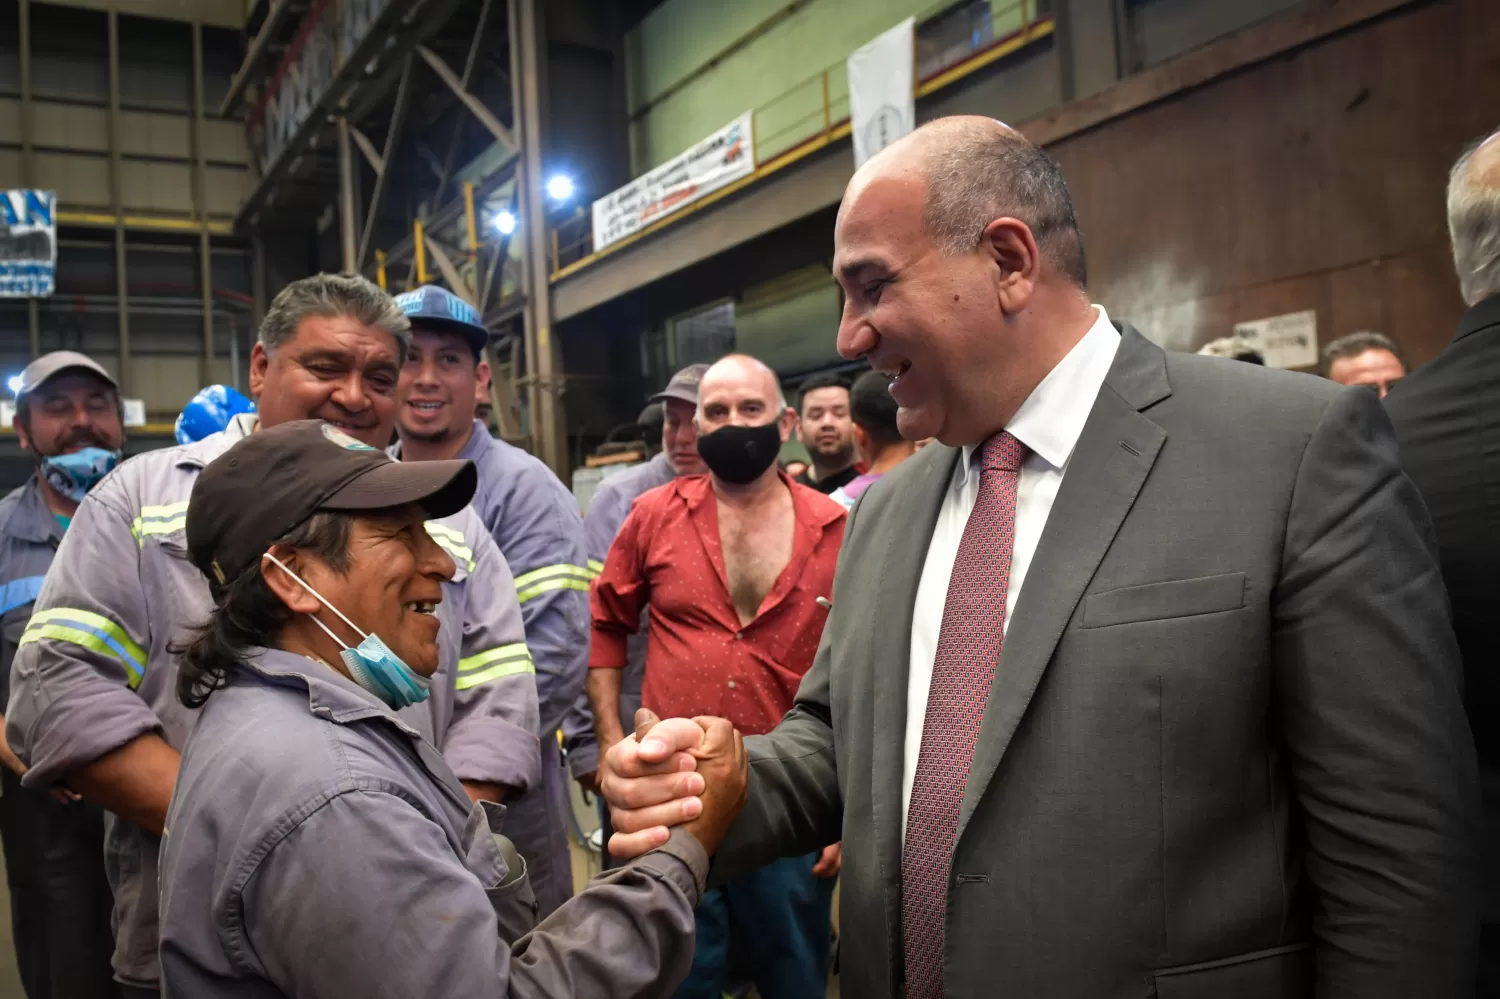 VISITA OFICIAL. Juan Manzur dialoga con obreros de una industria en Puerto Madryn, Chubut, durante un recorrido reciente. Foto: Twitter @JuanManzurOK